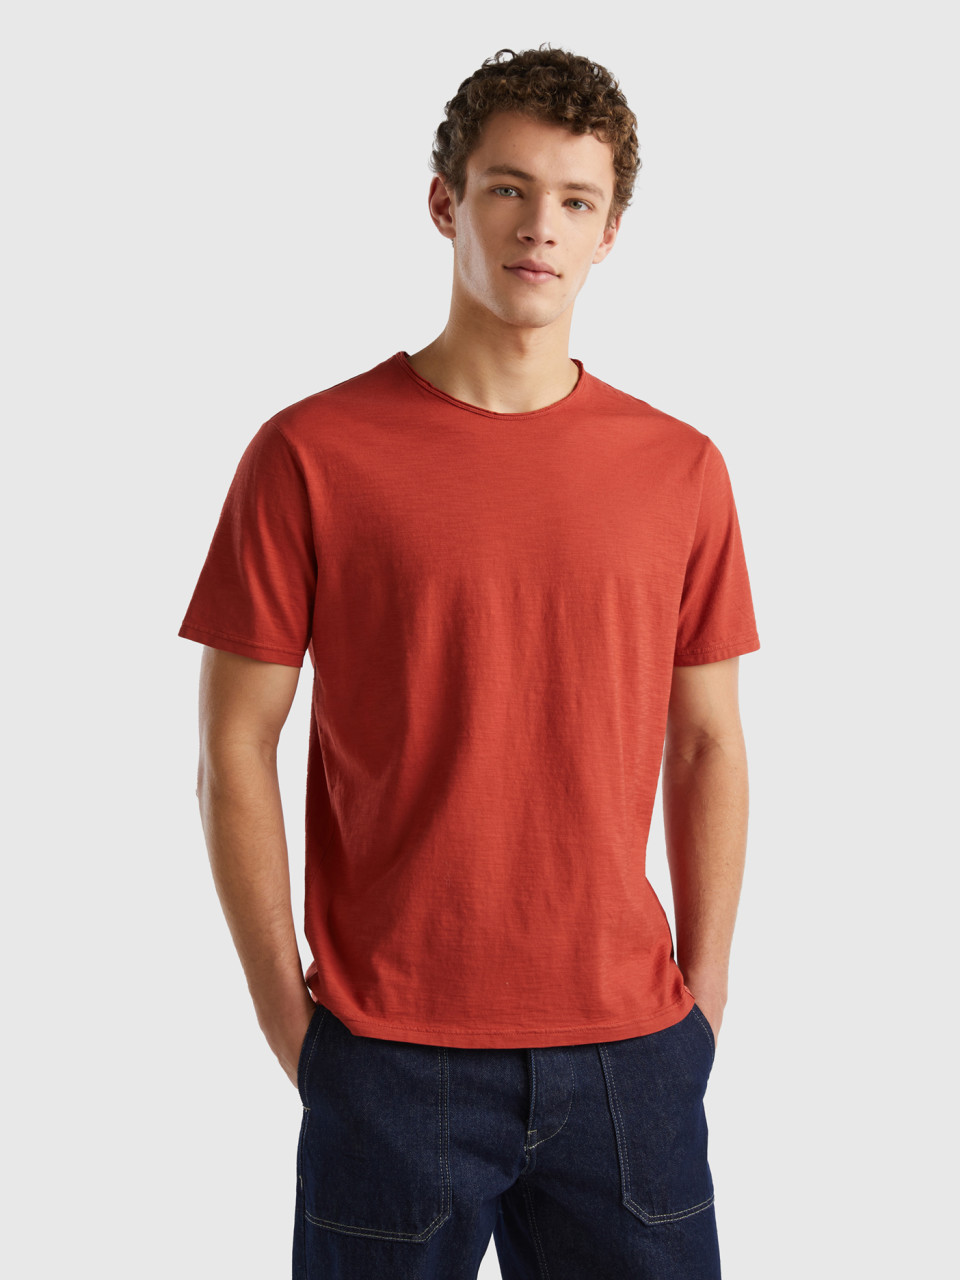 Benetton, Dark Red Slub Cotton T-shirt, Brick Red, Men